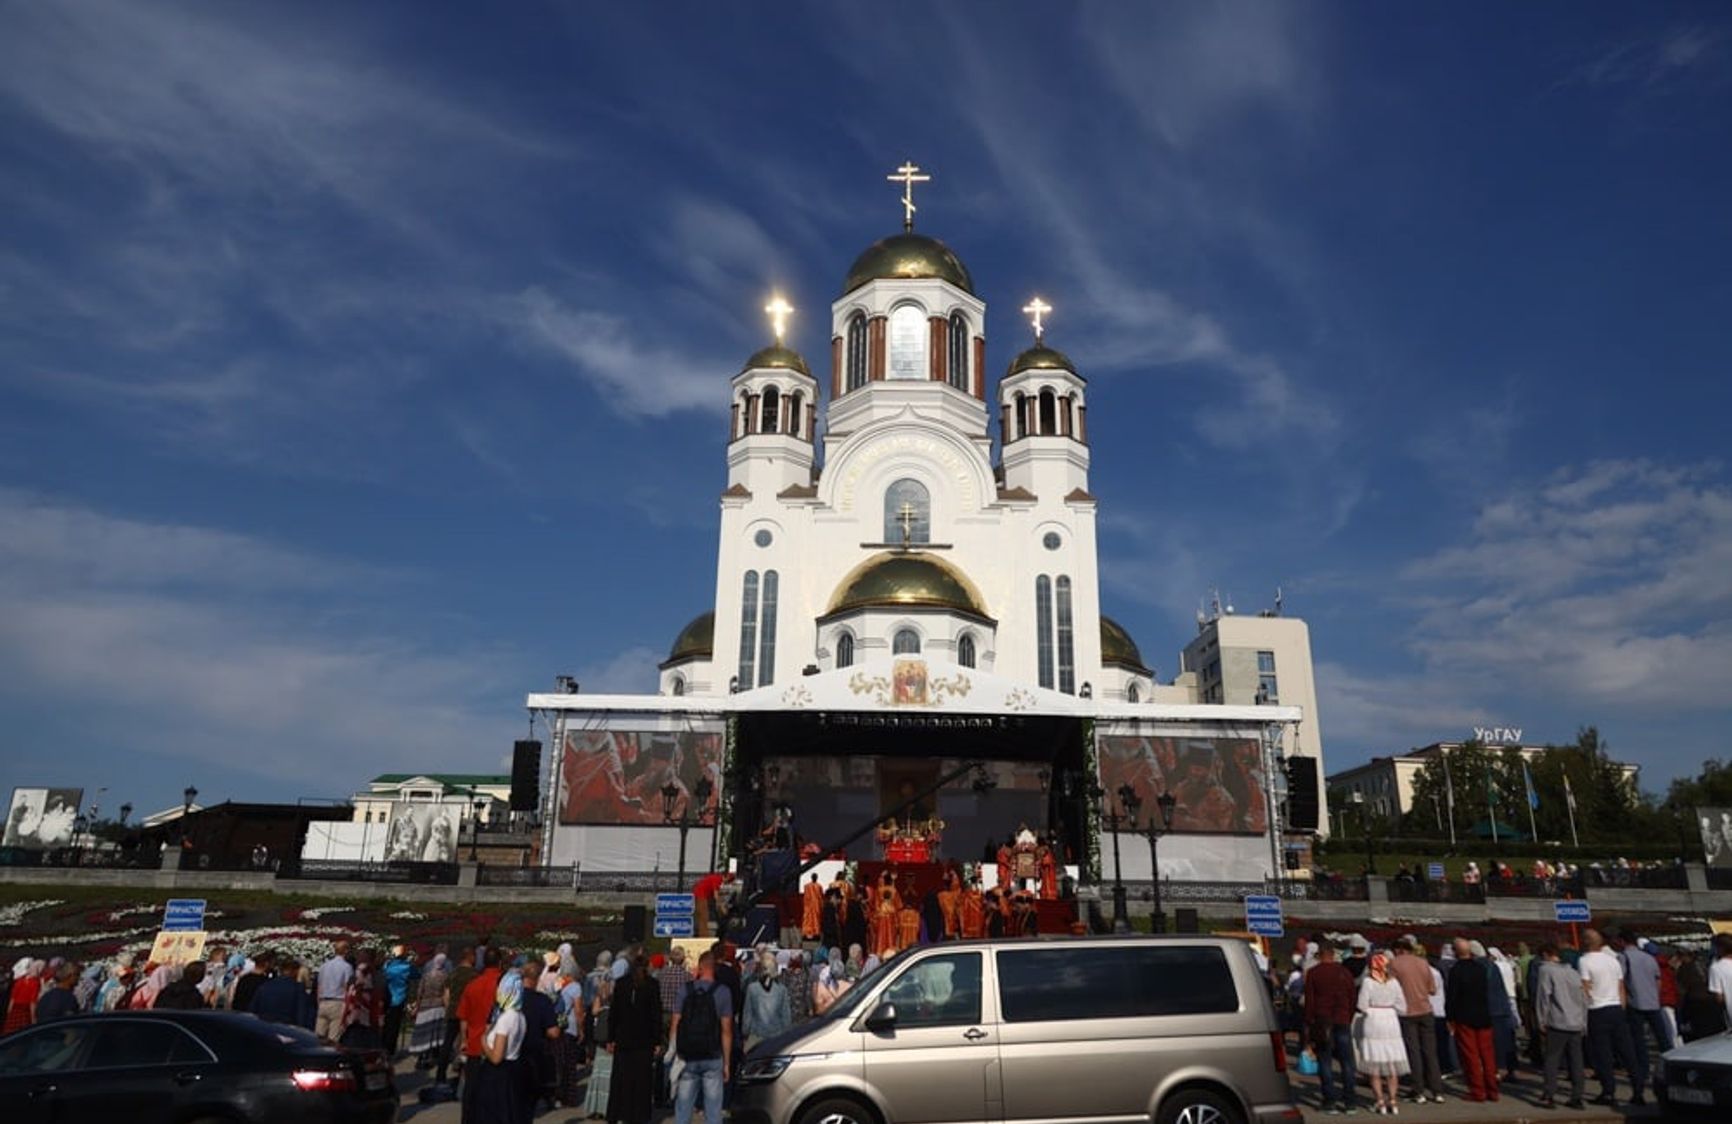 У Єкатеринбурзі проходить православний фестиваль «Царські дні». На заборонений владою через COVID-19 хресний хід зібралися тисячі людей